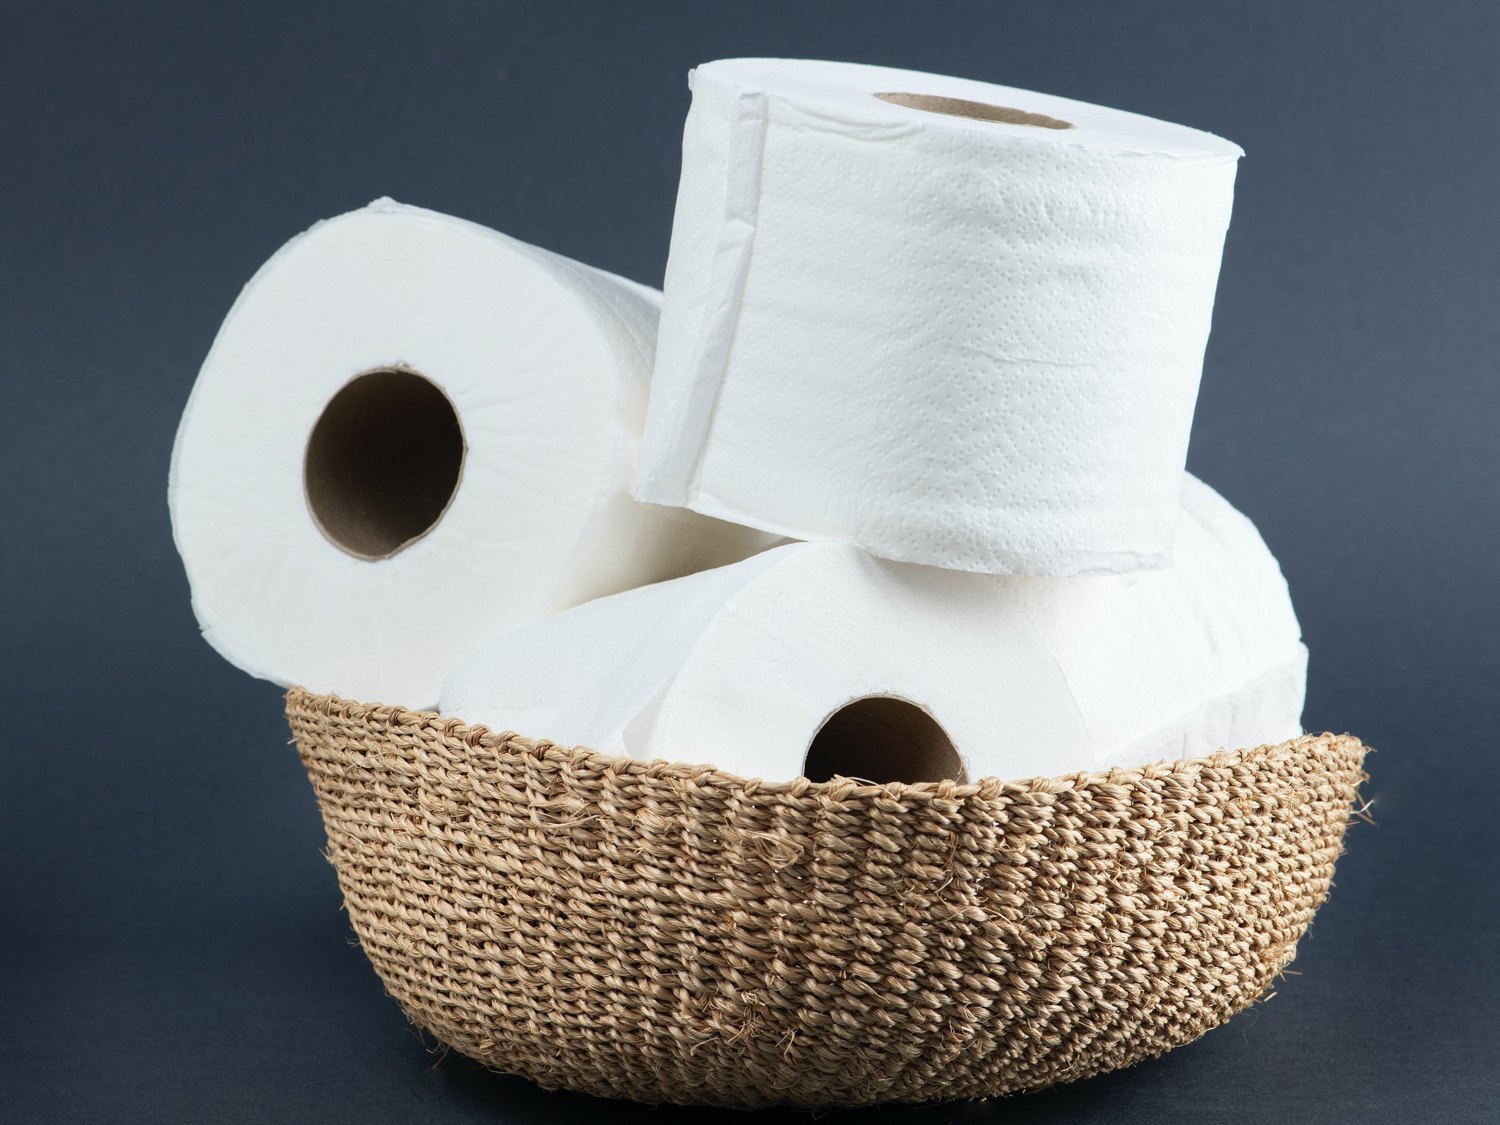 Los 12 rollos de papel higiénico más baratos del supermercado, según la OCU